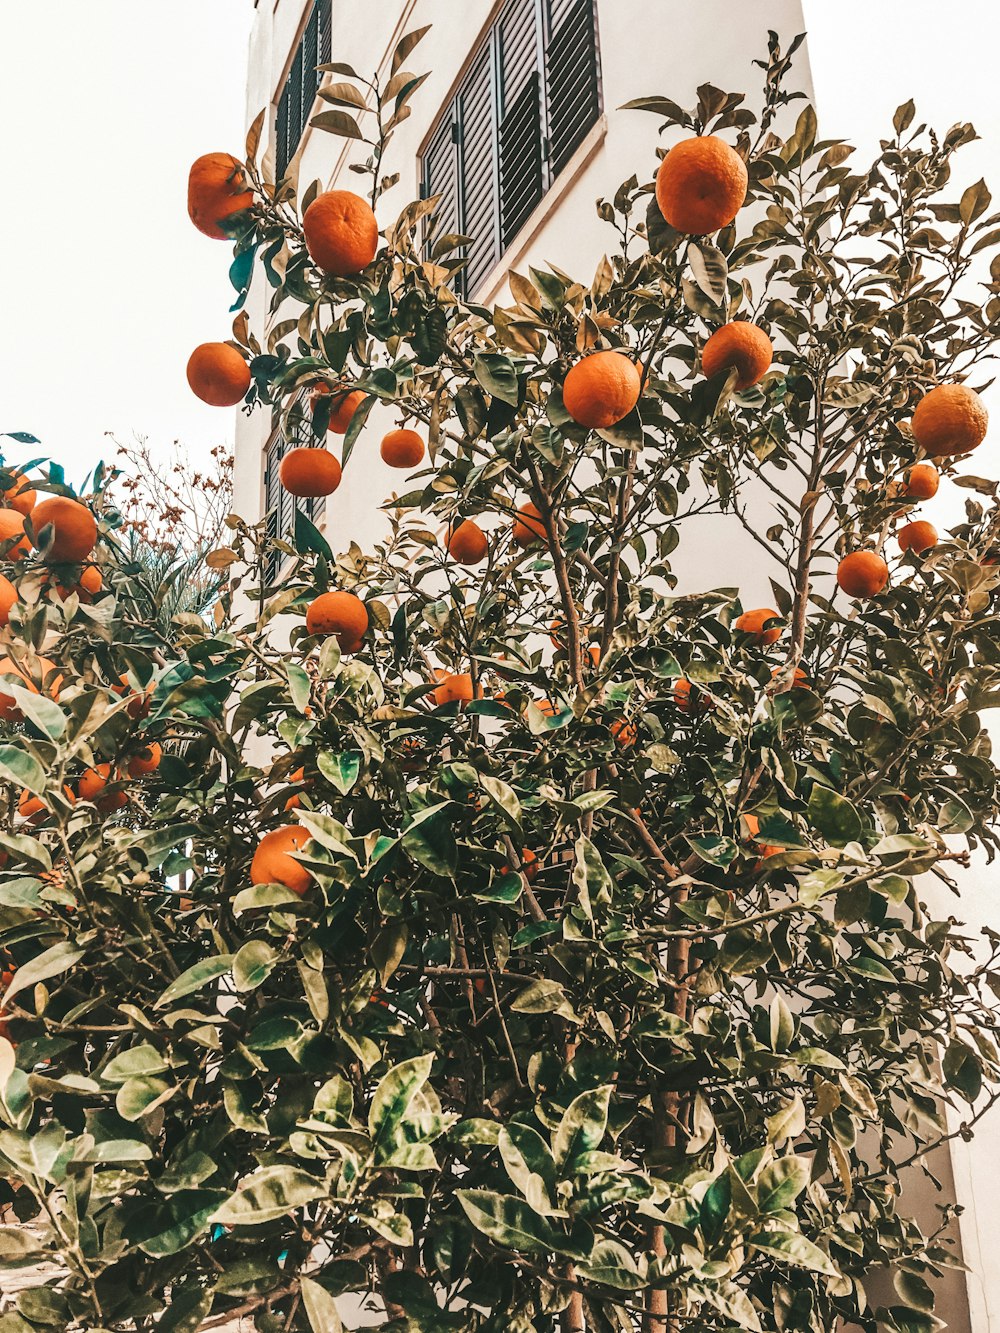 fruta laranja